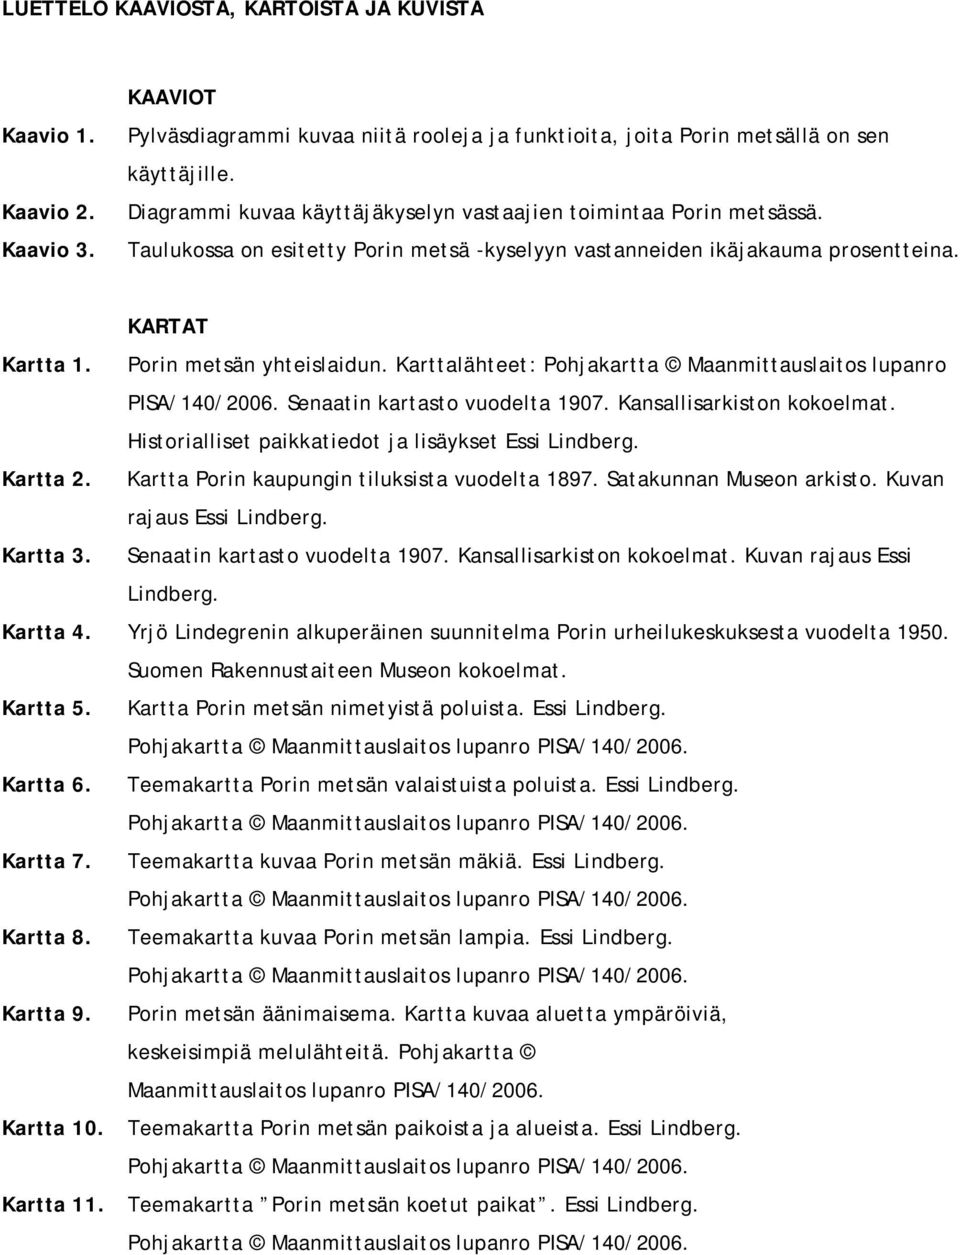 Karttalähteet: Pohjakartta Maanmittauslaitos lupanro PISA/140/2006. Senaatin kartasto vuodelta 1907. Kansallisarkiston kokoelmat. Historialliset paikkatiedot ja lisäykset Essi Lindberg. Kartta 2.